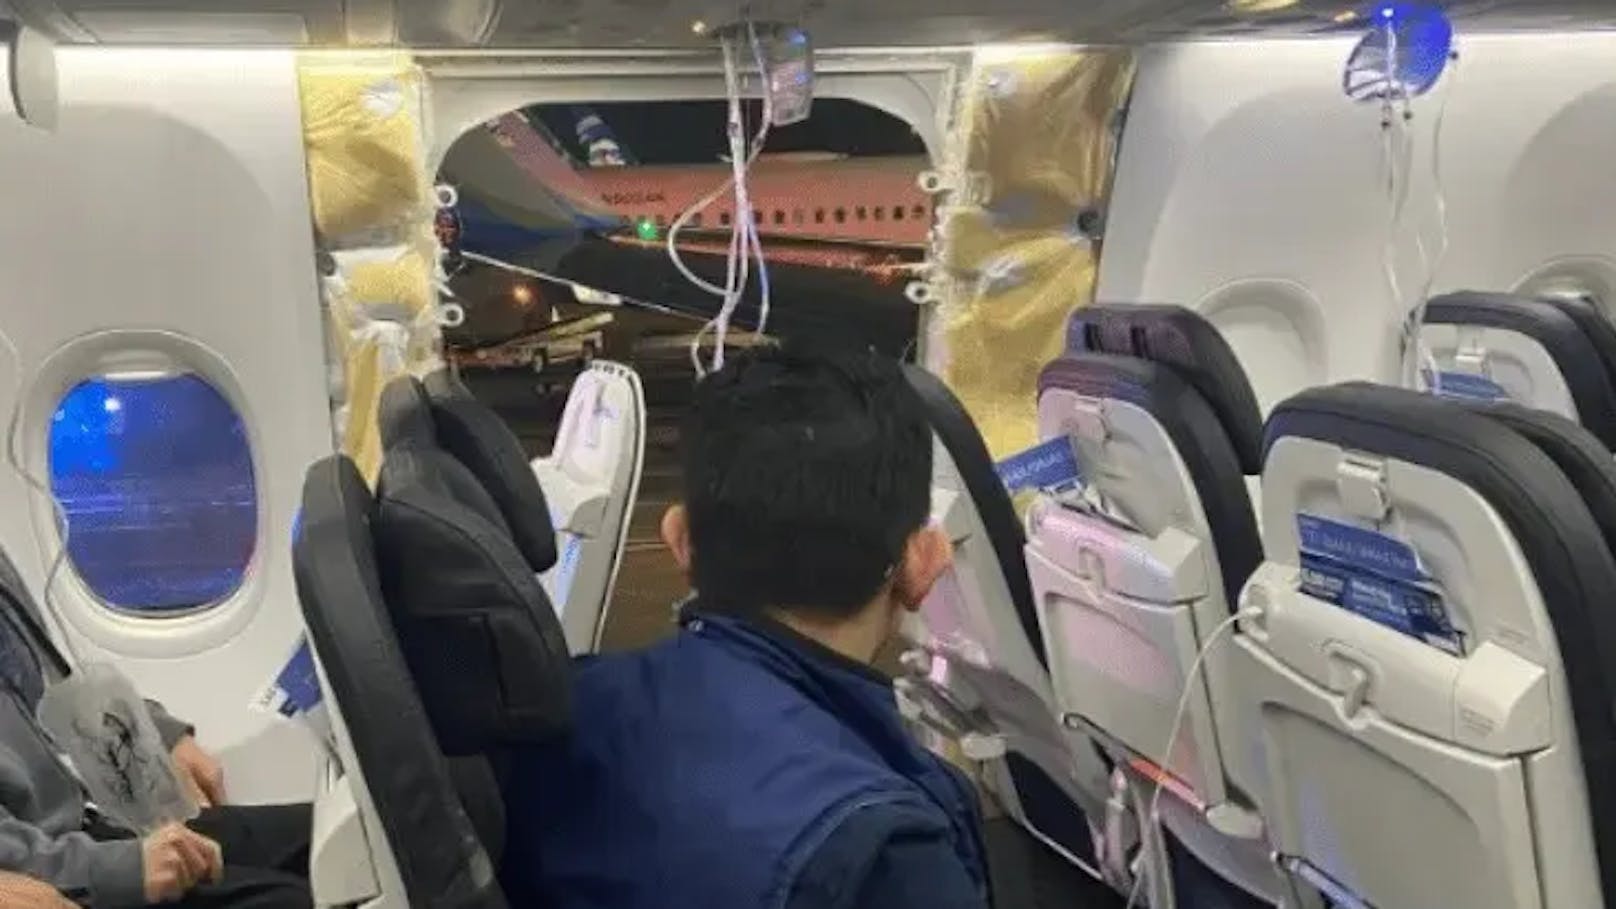 Lose Schrauben an Türen von Boeing 737 Max gefunden